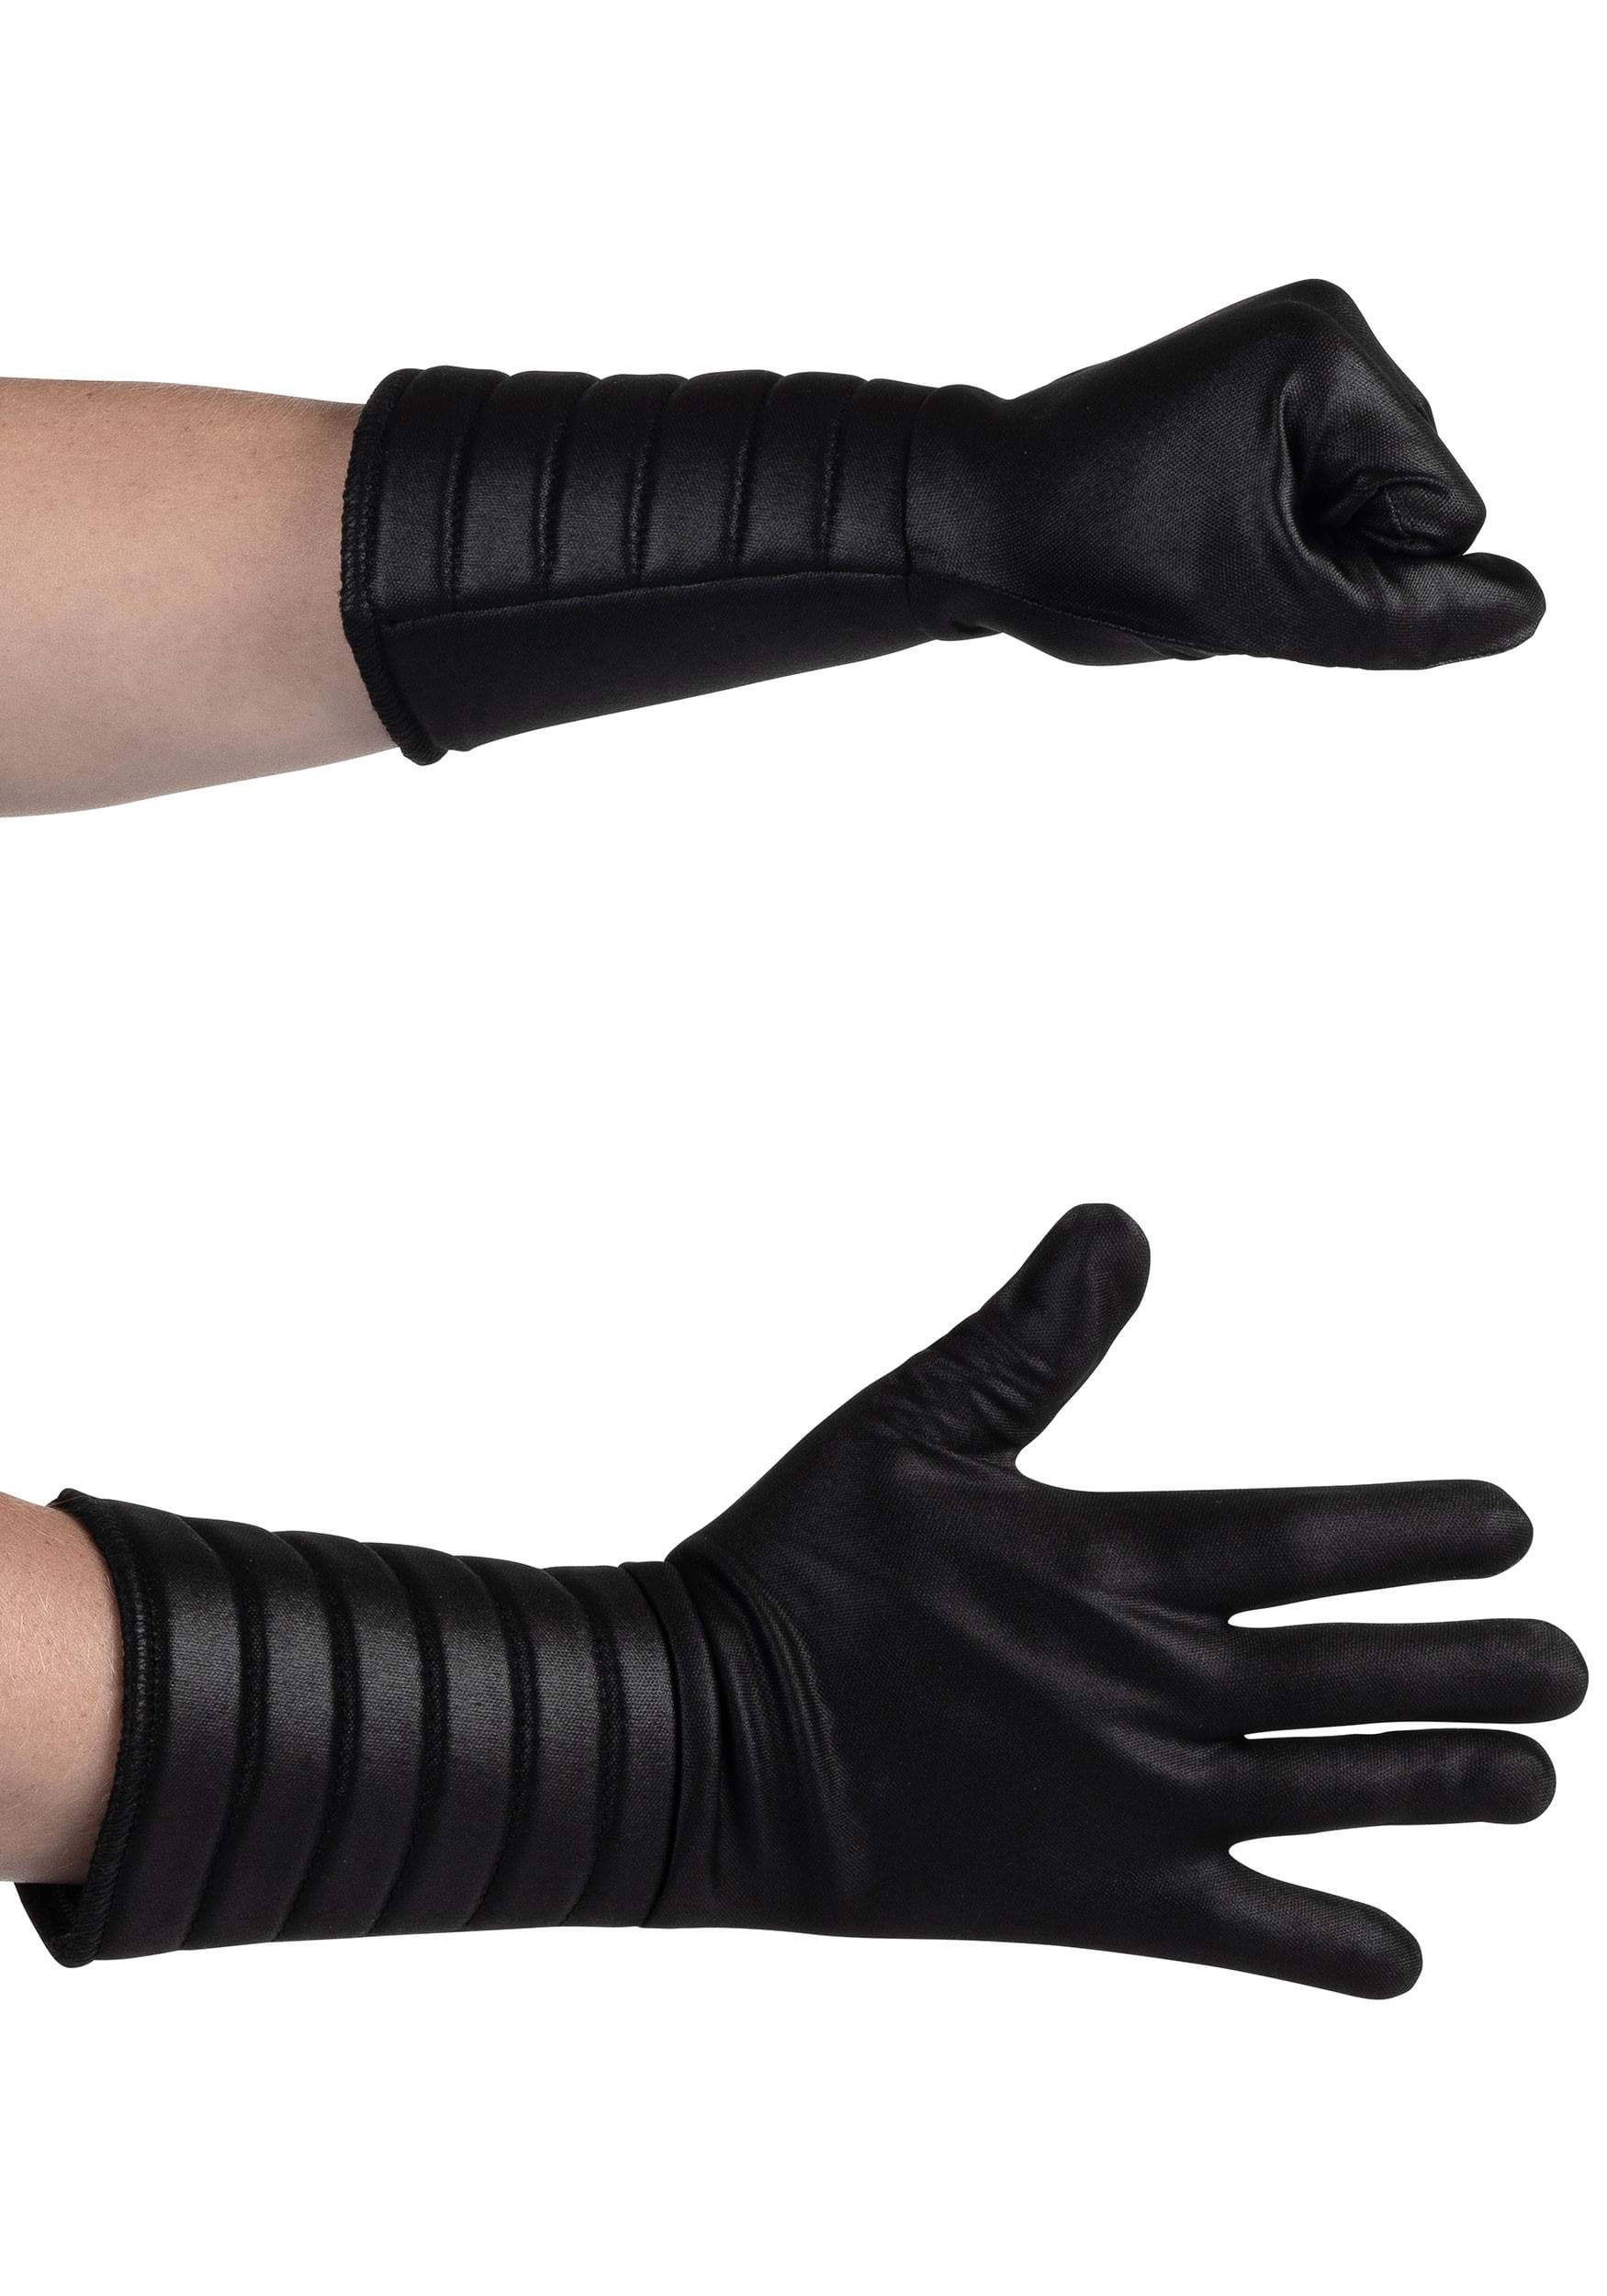 Star Wars Child Deluxe Darth Vader Gloves , Star Wars Gloves